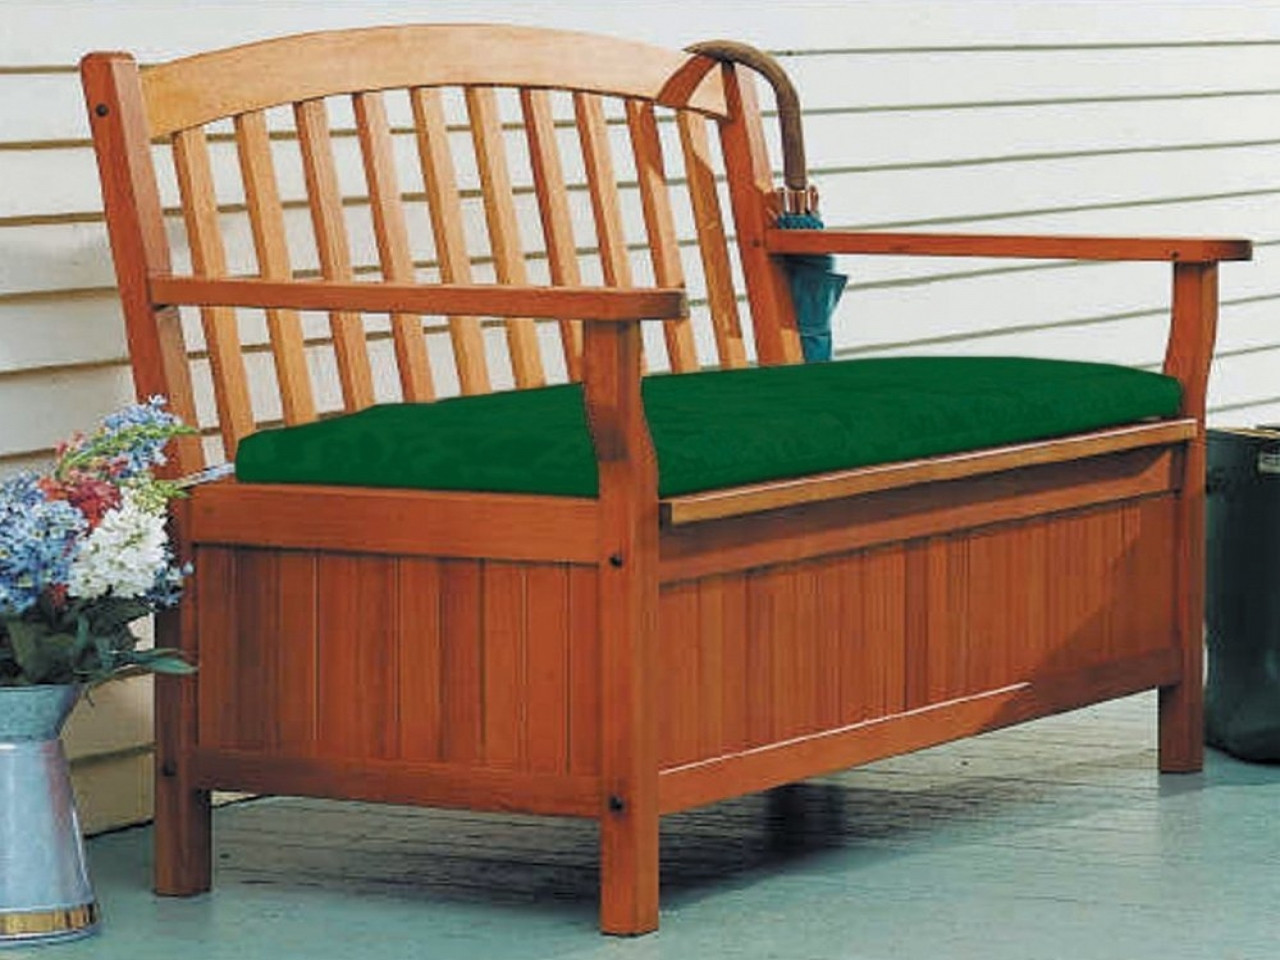 Wood Storage Bench Seat
 Indoor bench storage outdoor storage bench seat wooden